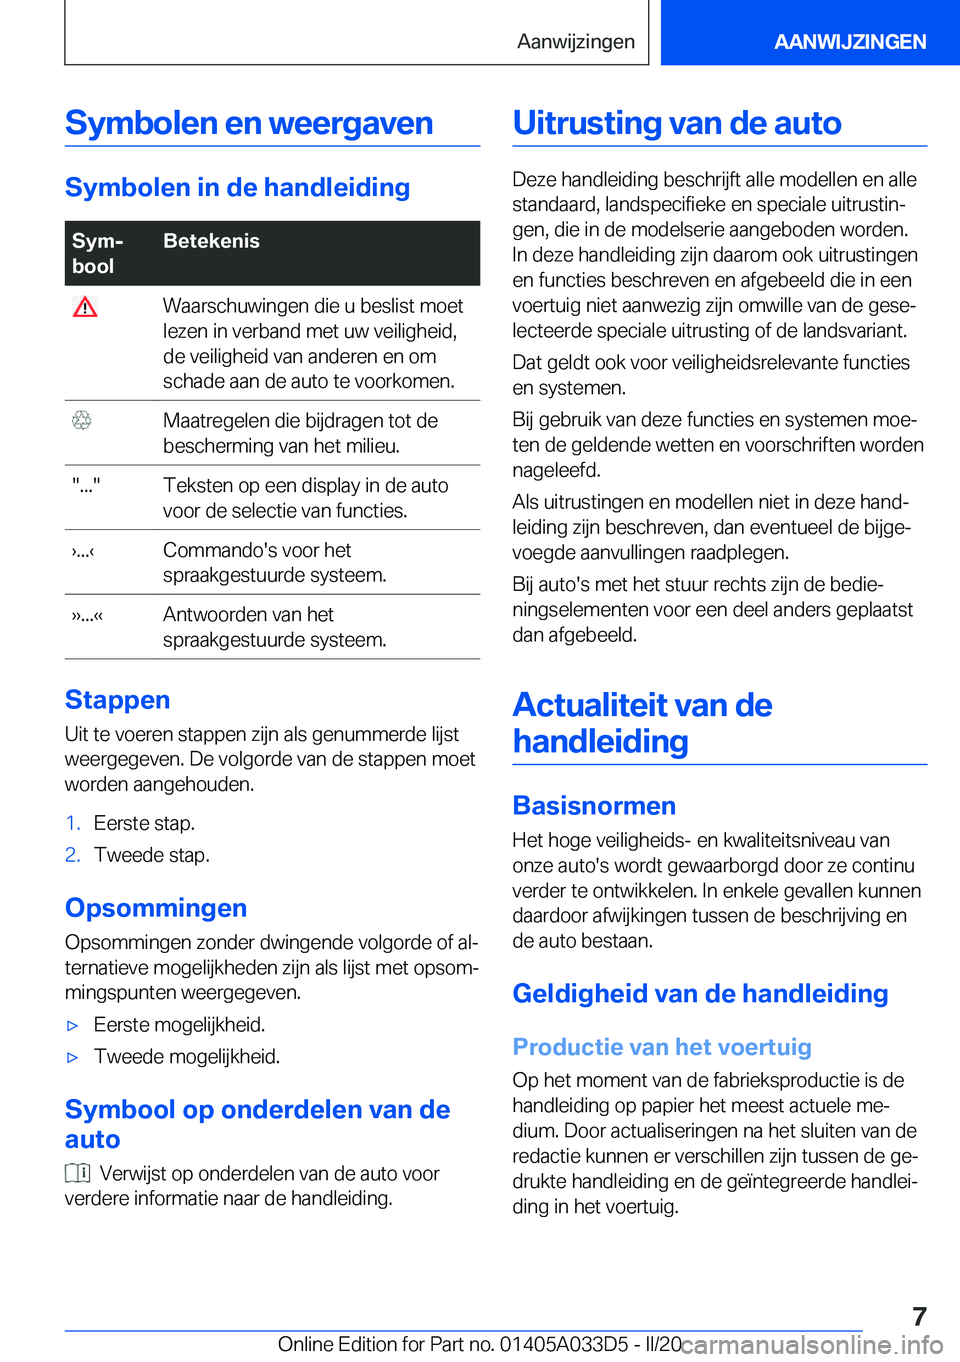 BMW X5 M 2020  Instructieboekjes (in Dutch) �S�y�m�b�o�l�e�n��e�n��w�e�e�r�g�a�v�e�n
�S�y�m�b�o�l�e�n��i�n��d�e��h�a�n�d�l�e�i�d�i�n�g
�S�y�mj
�b�o�o�l�B�e�t�e�k�e�n�i�s��W�a�a�r�s�c�h�u�w�i�n�g�e�n��d�i�e��u��b�e�s�l�i�s�t��m�o�e�t
